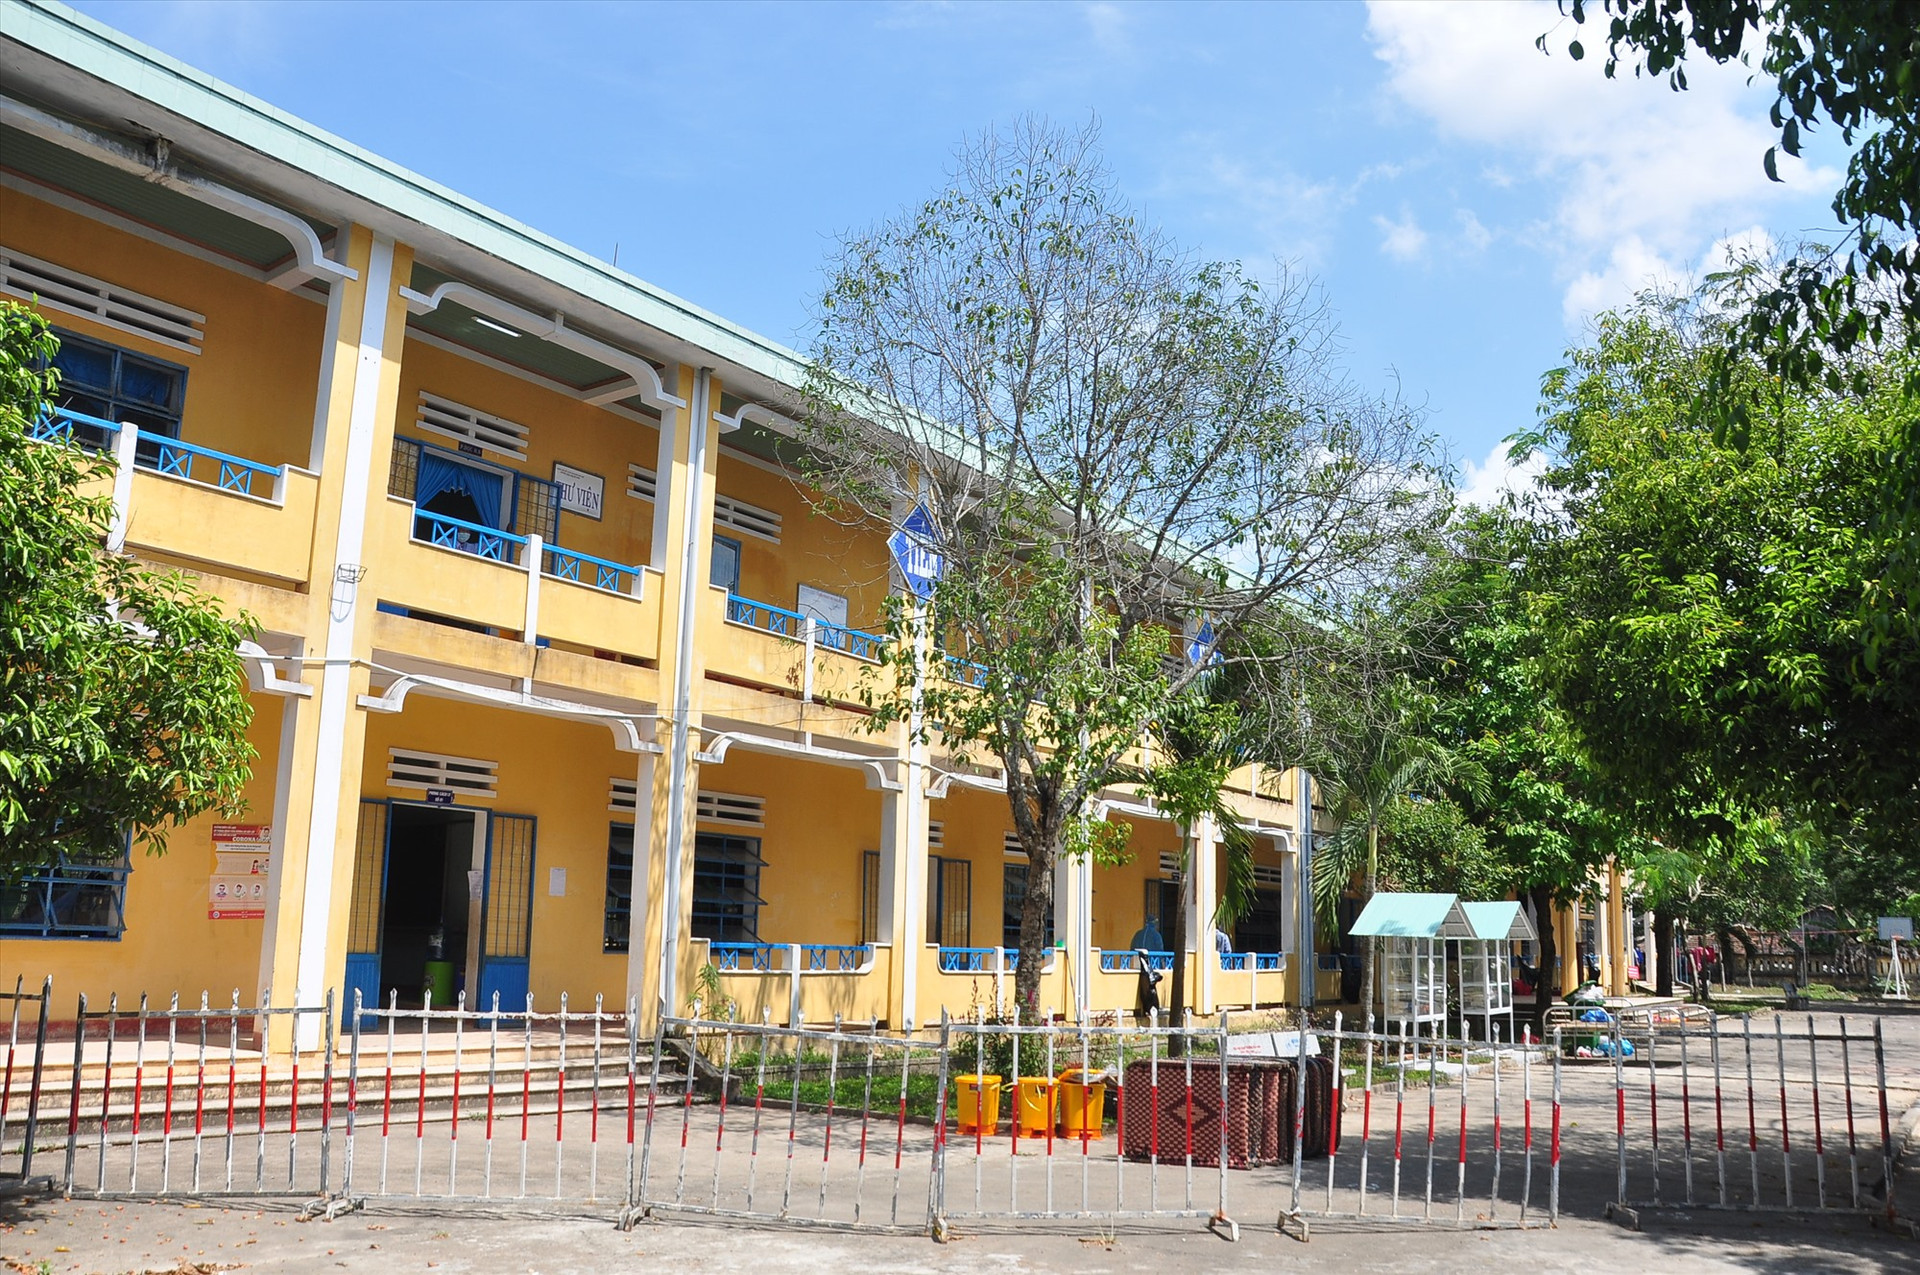 Đến nay, khu cách ly tập trung tại Trường THCS Nguyễn Hiền đang tiếp nhận 79 người trở về từ TP.Hồ Chí Minh và Hà Nội sau ngày 1.4. Ảnh: VINH ANH